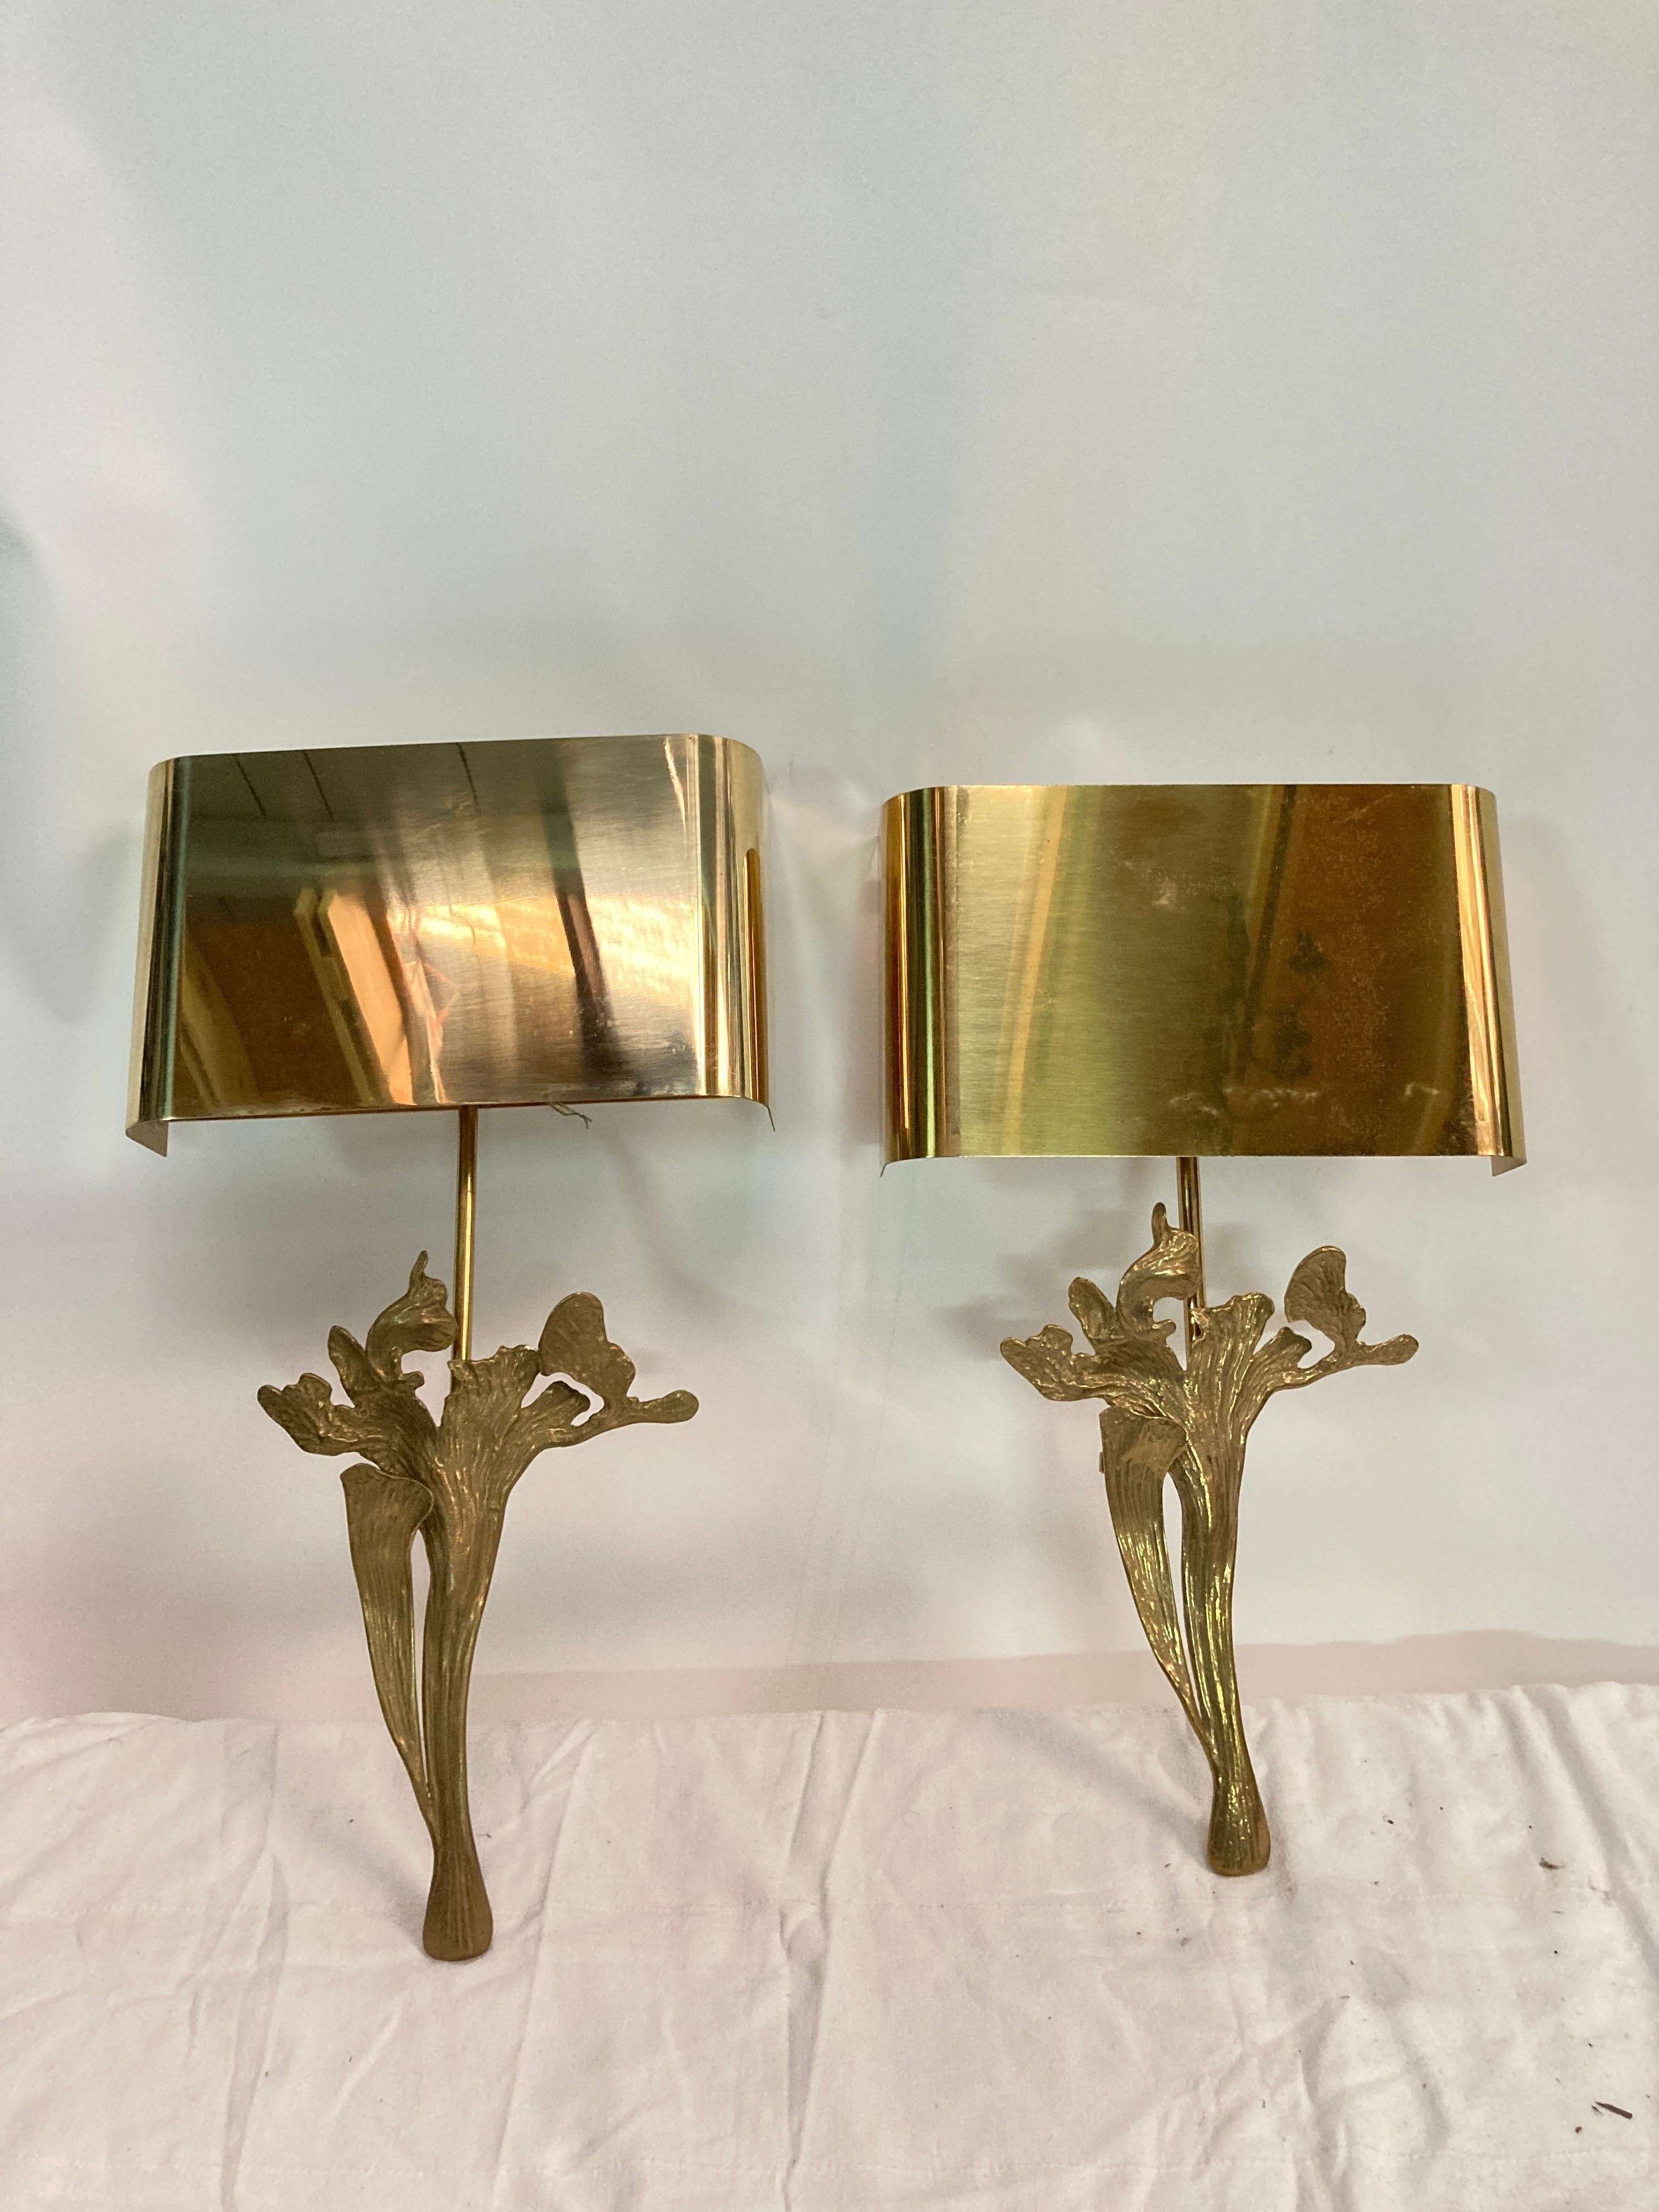 Belle paire d'appliques en bronze avec abat-jour en laiton poli
Signé par Maison Charles
Fabriqué en France
Deux paires disponibles 
Recâblage